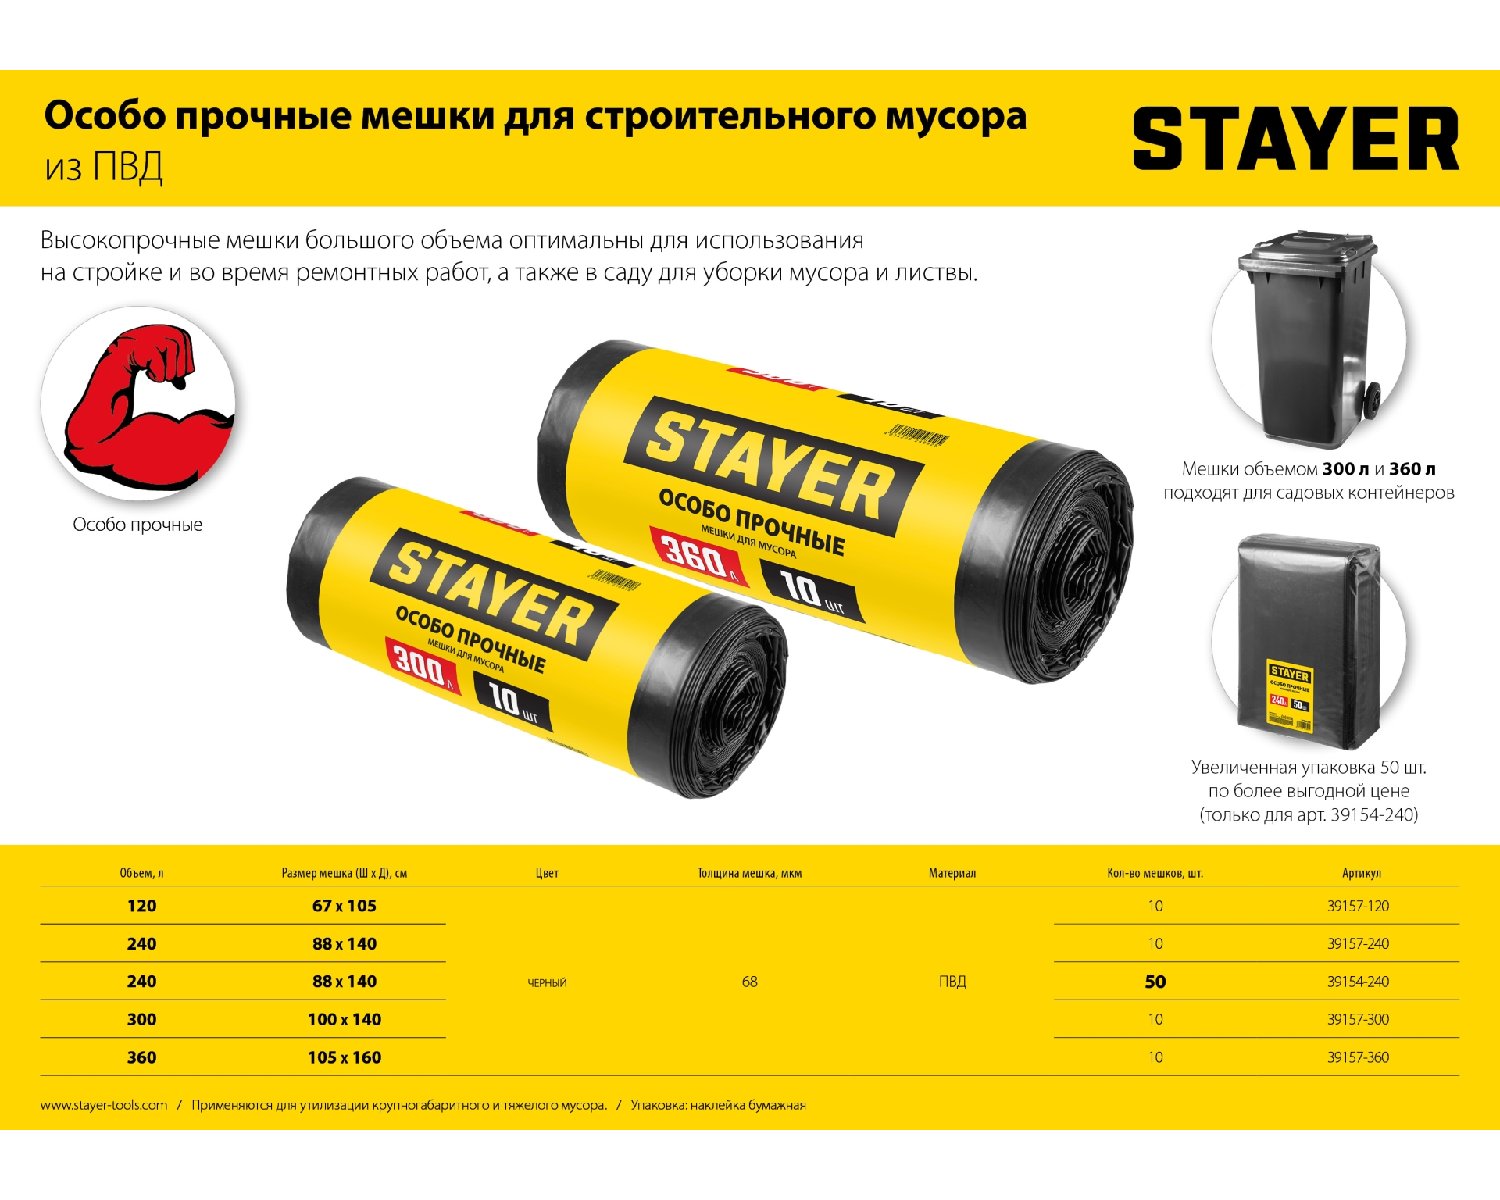 Строительные мусорные мешки Stayer 120л, 10шт, особопрочные, черные, HEAVY DUTY, (39157-120)